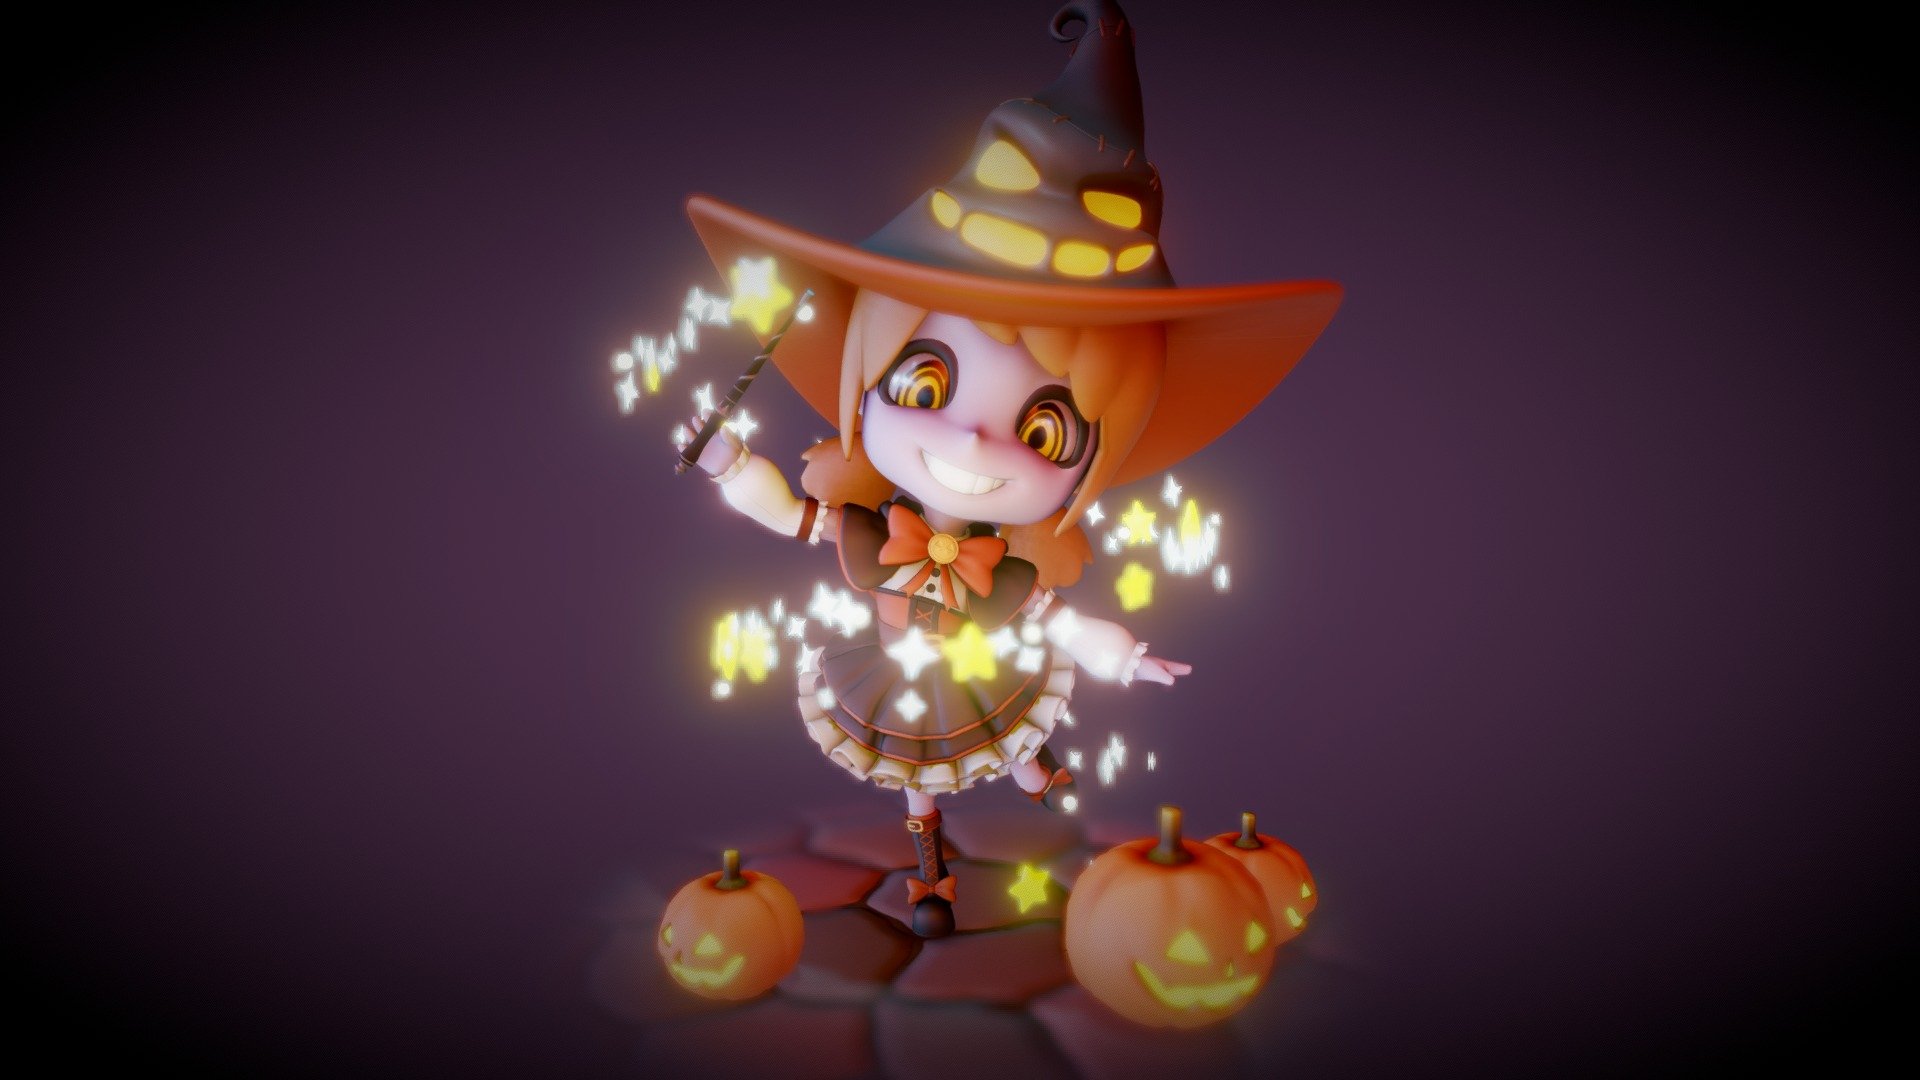 こちらの企画に参加しました→http://twipla.jp/events/273945 - Halloween witch - 3D model by masashi (@pema) 3d model